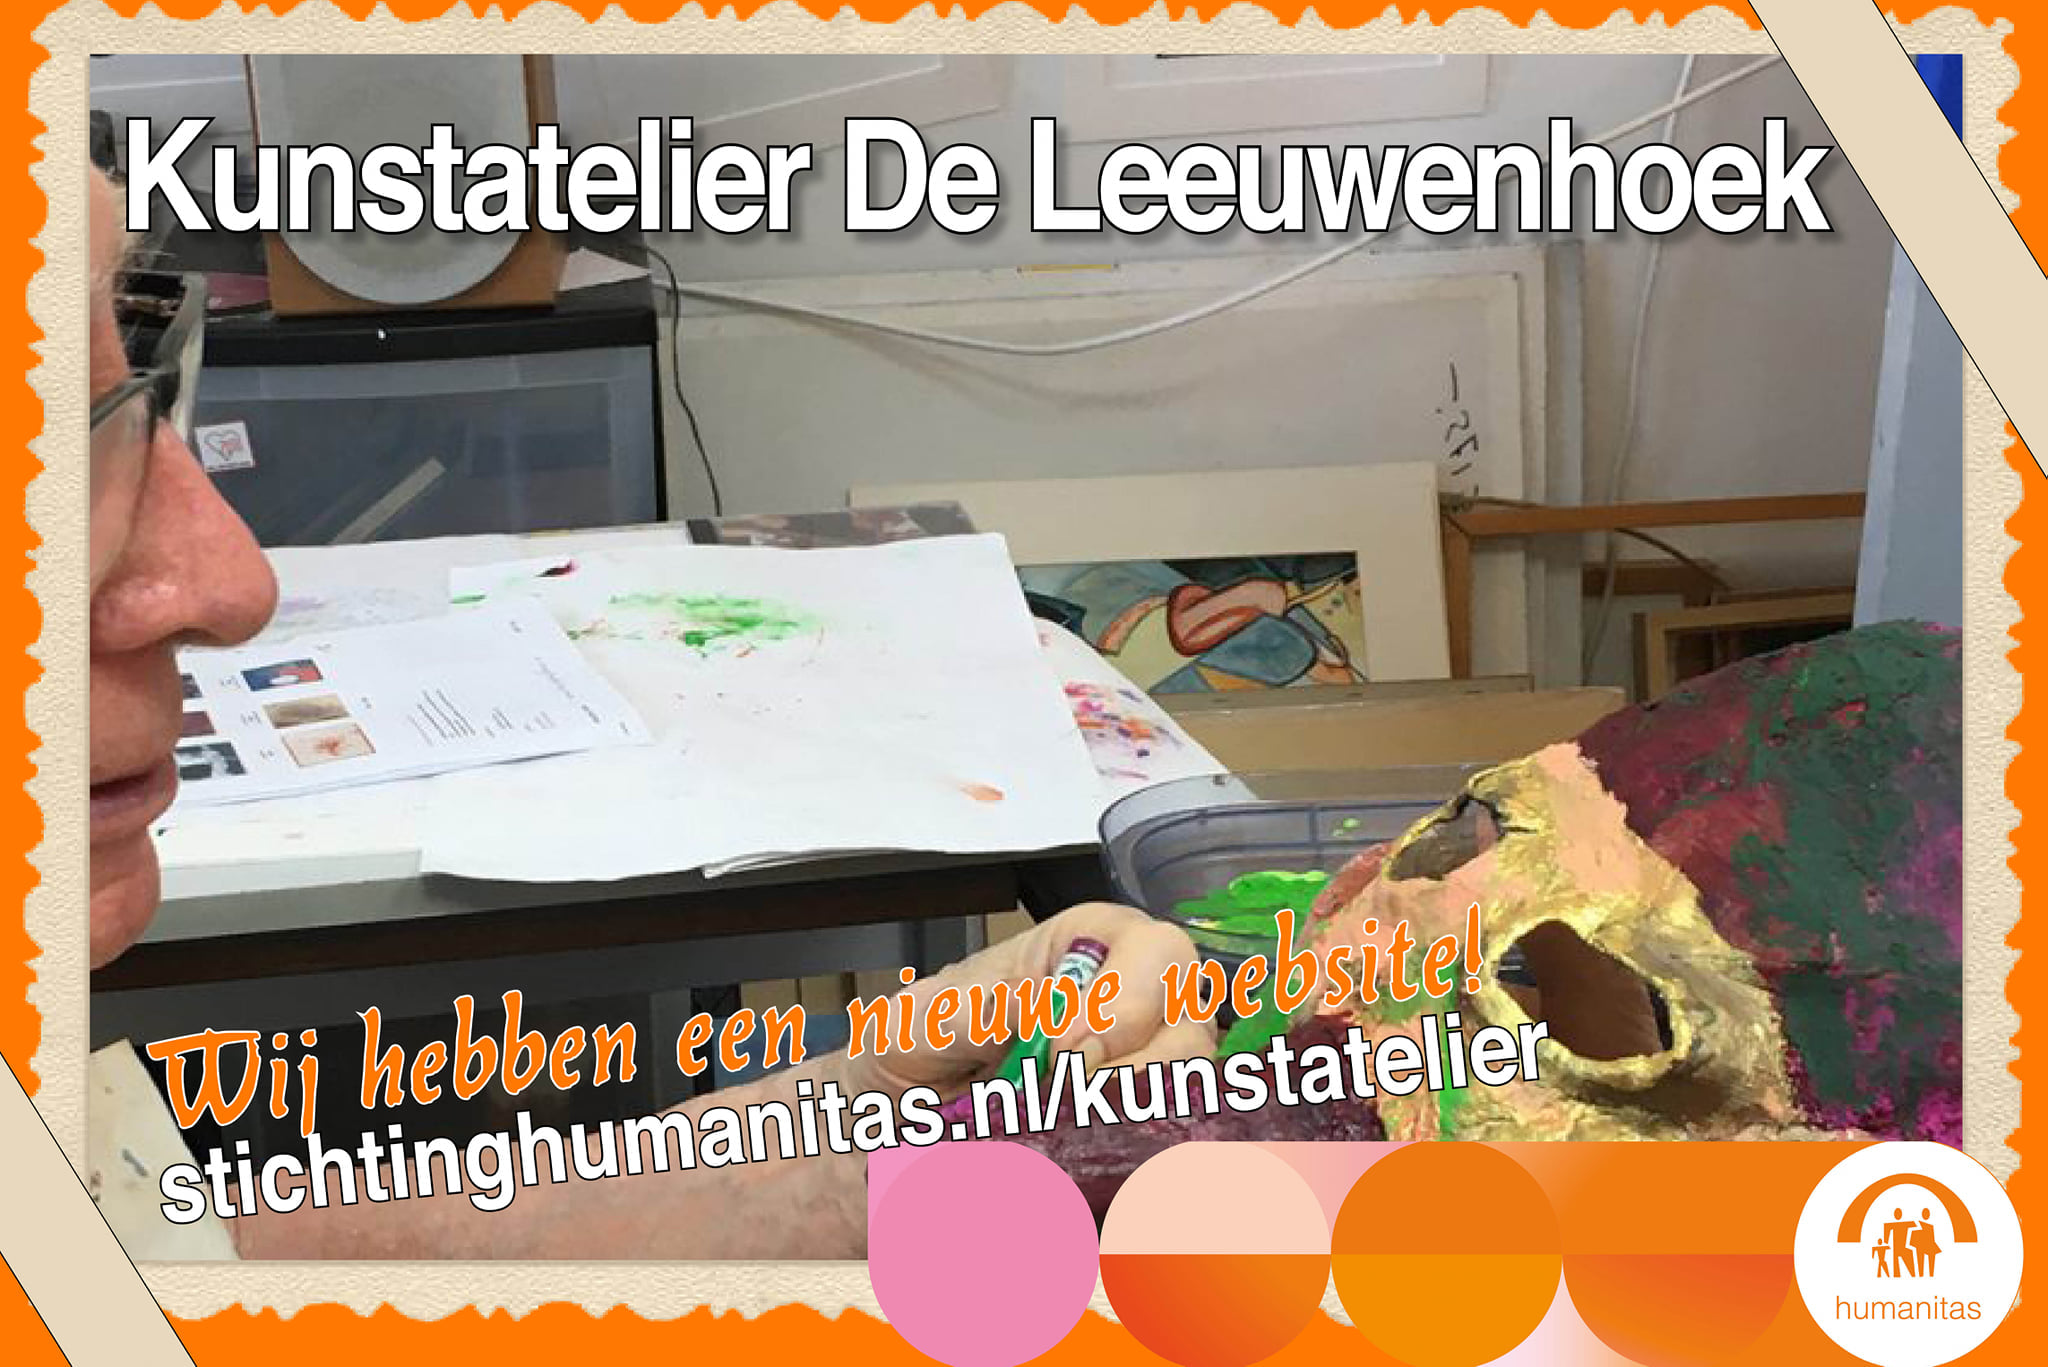 Kunstatelier De Leeuwenhoek heeft een nieuwe website en Facebookpagina